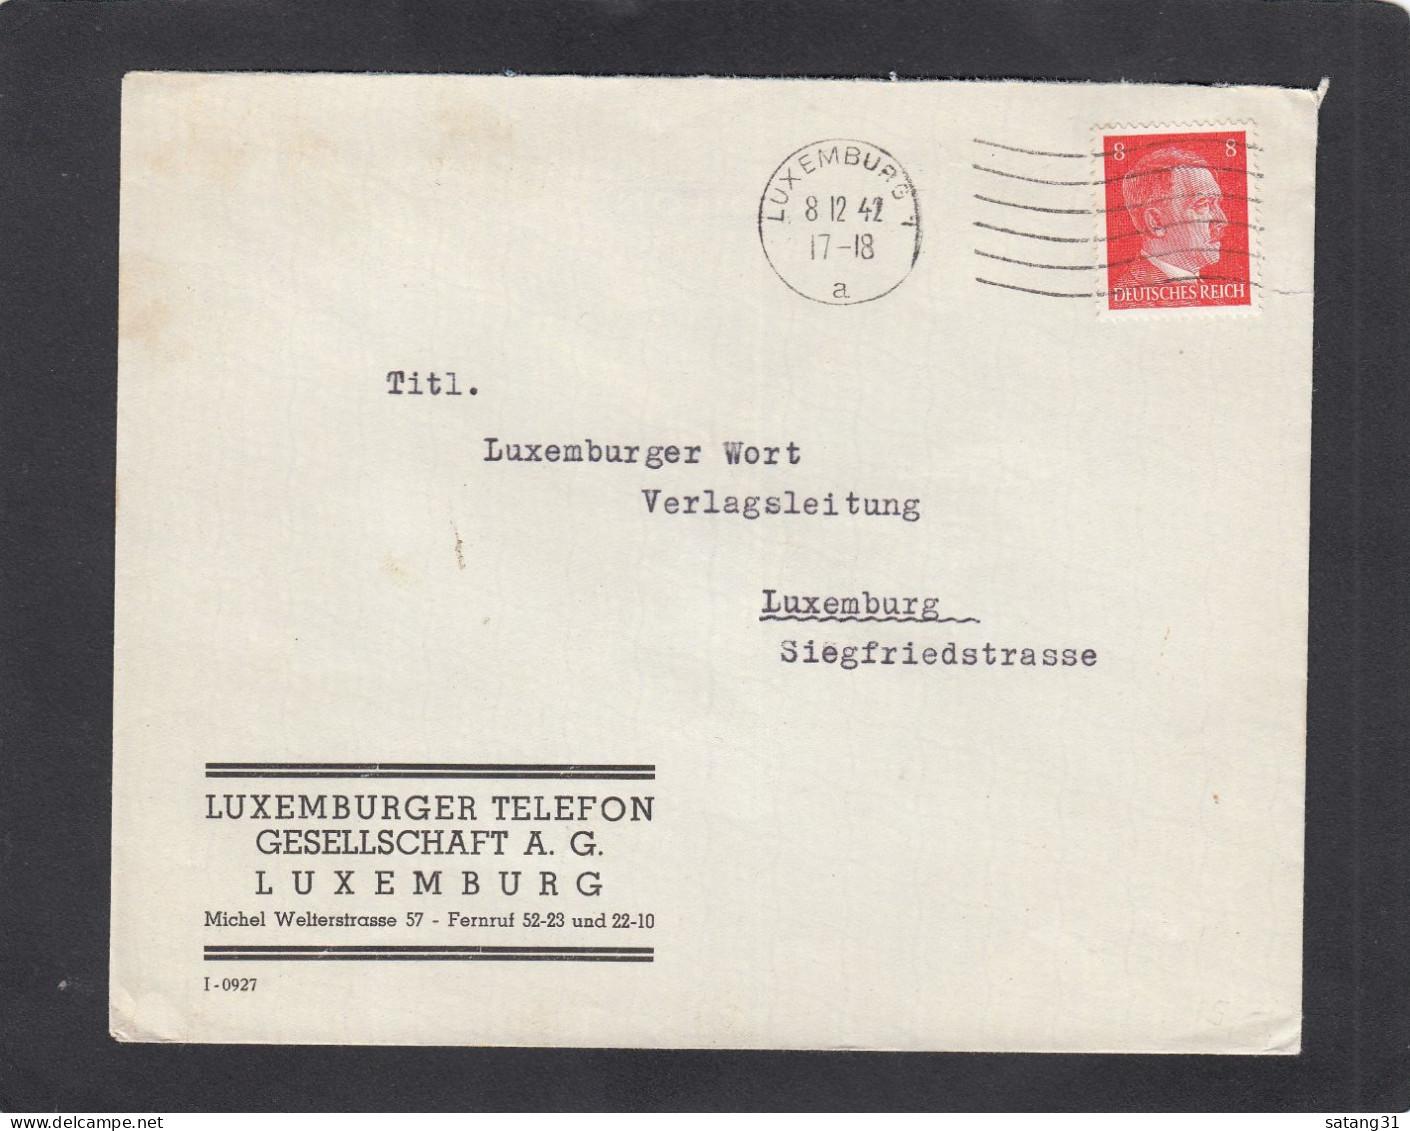 LUXEMBURGER TELEFON GESELLSCHAFT A.G., LUXEMBURG. - 1940-1944 German Occupation